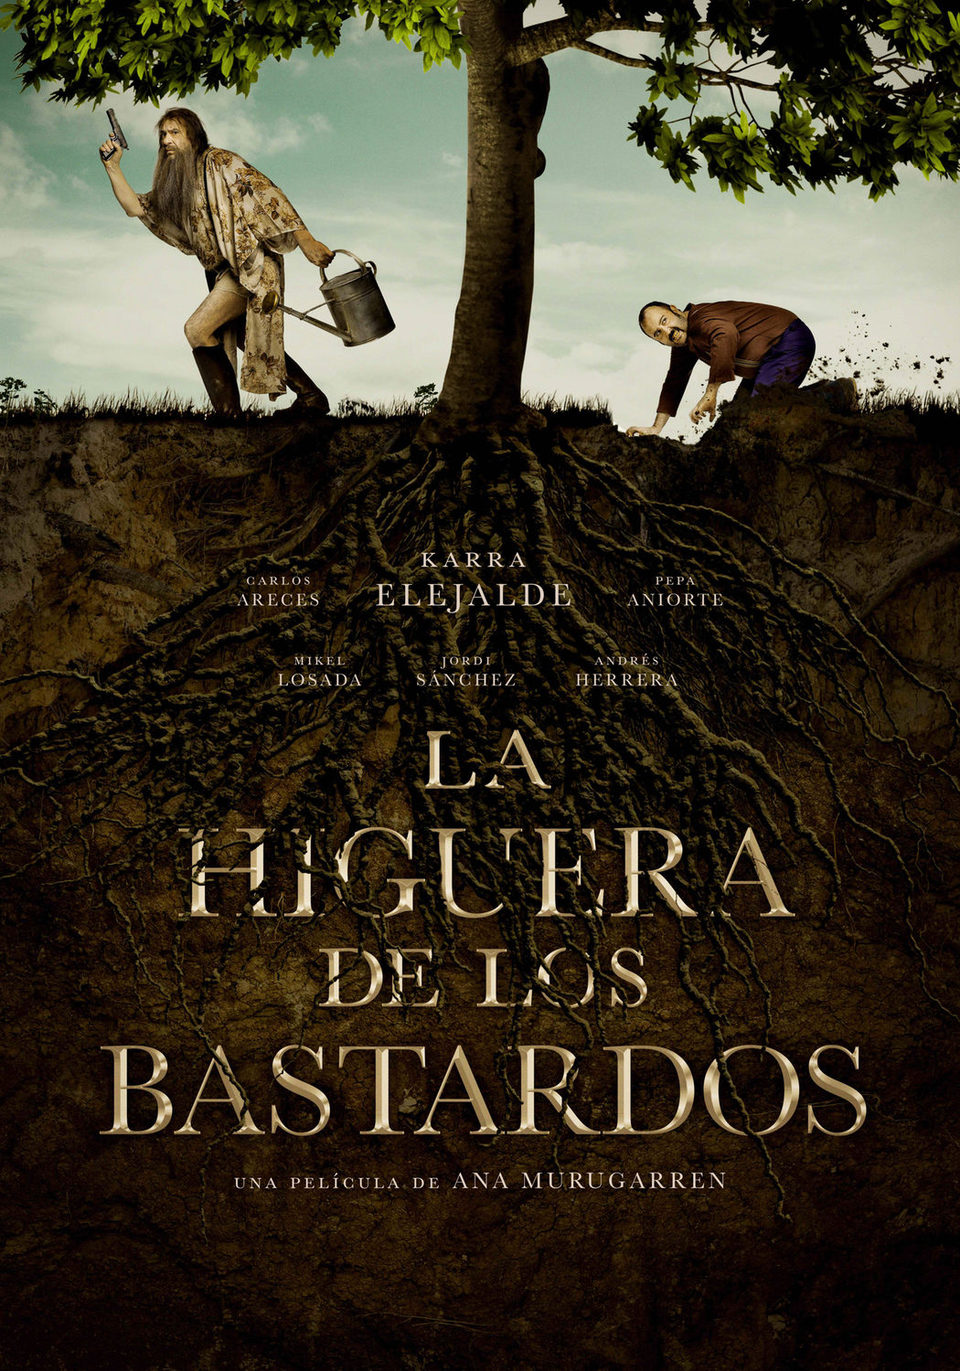 Poster of La higuera de los bastardos - Cartel promocional